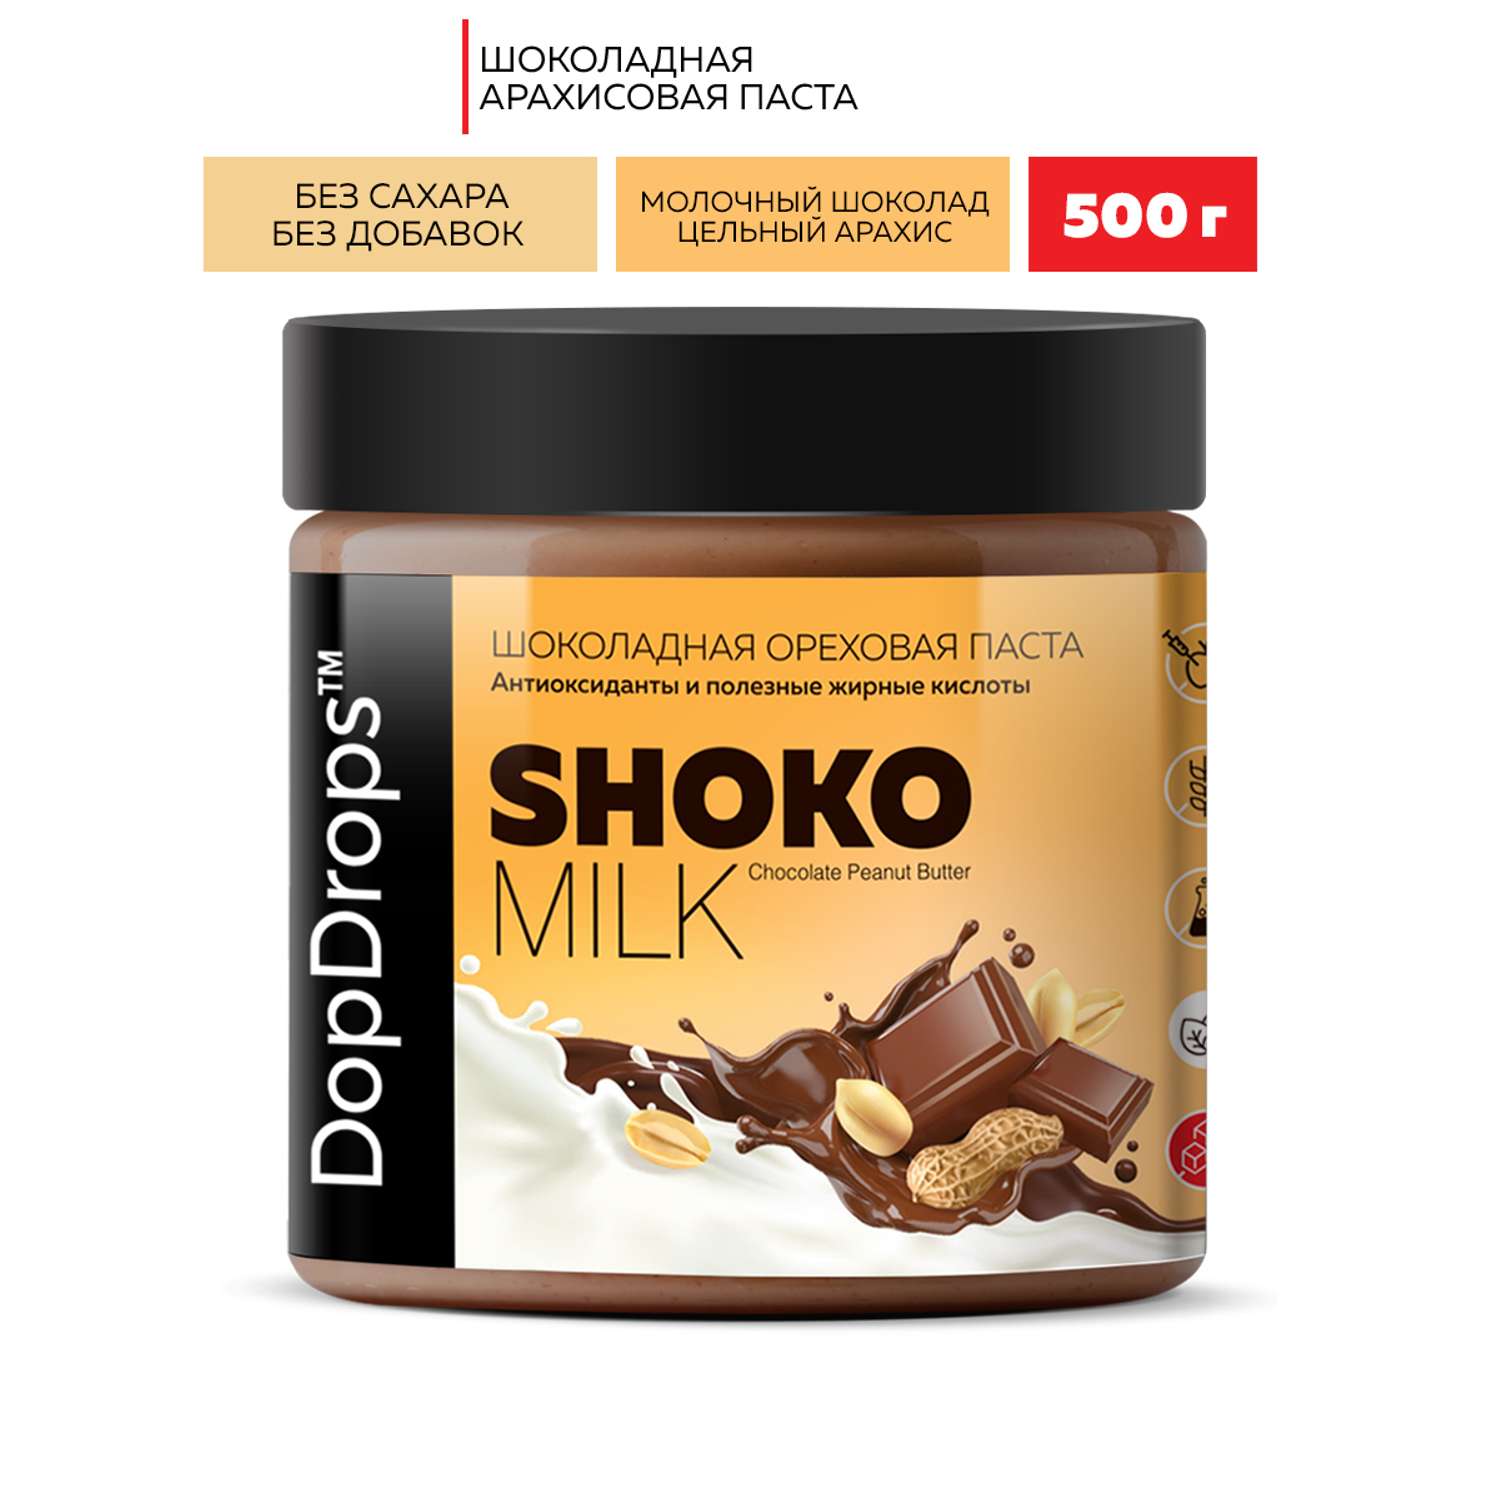 Шоколадная ореховая паста DopDrops Shoko milk арахисовая без сахара 500 г - фото 1